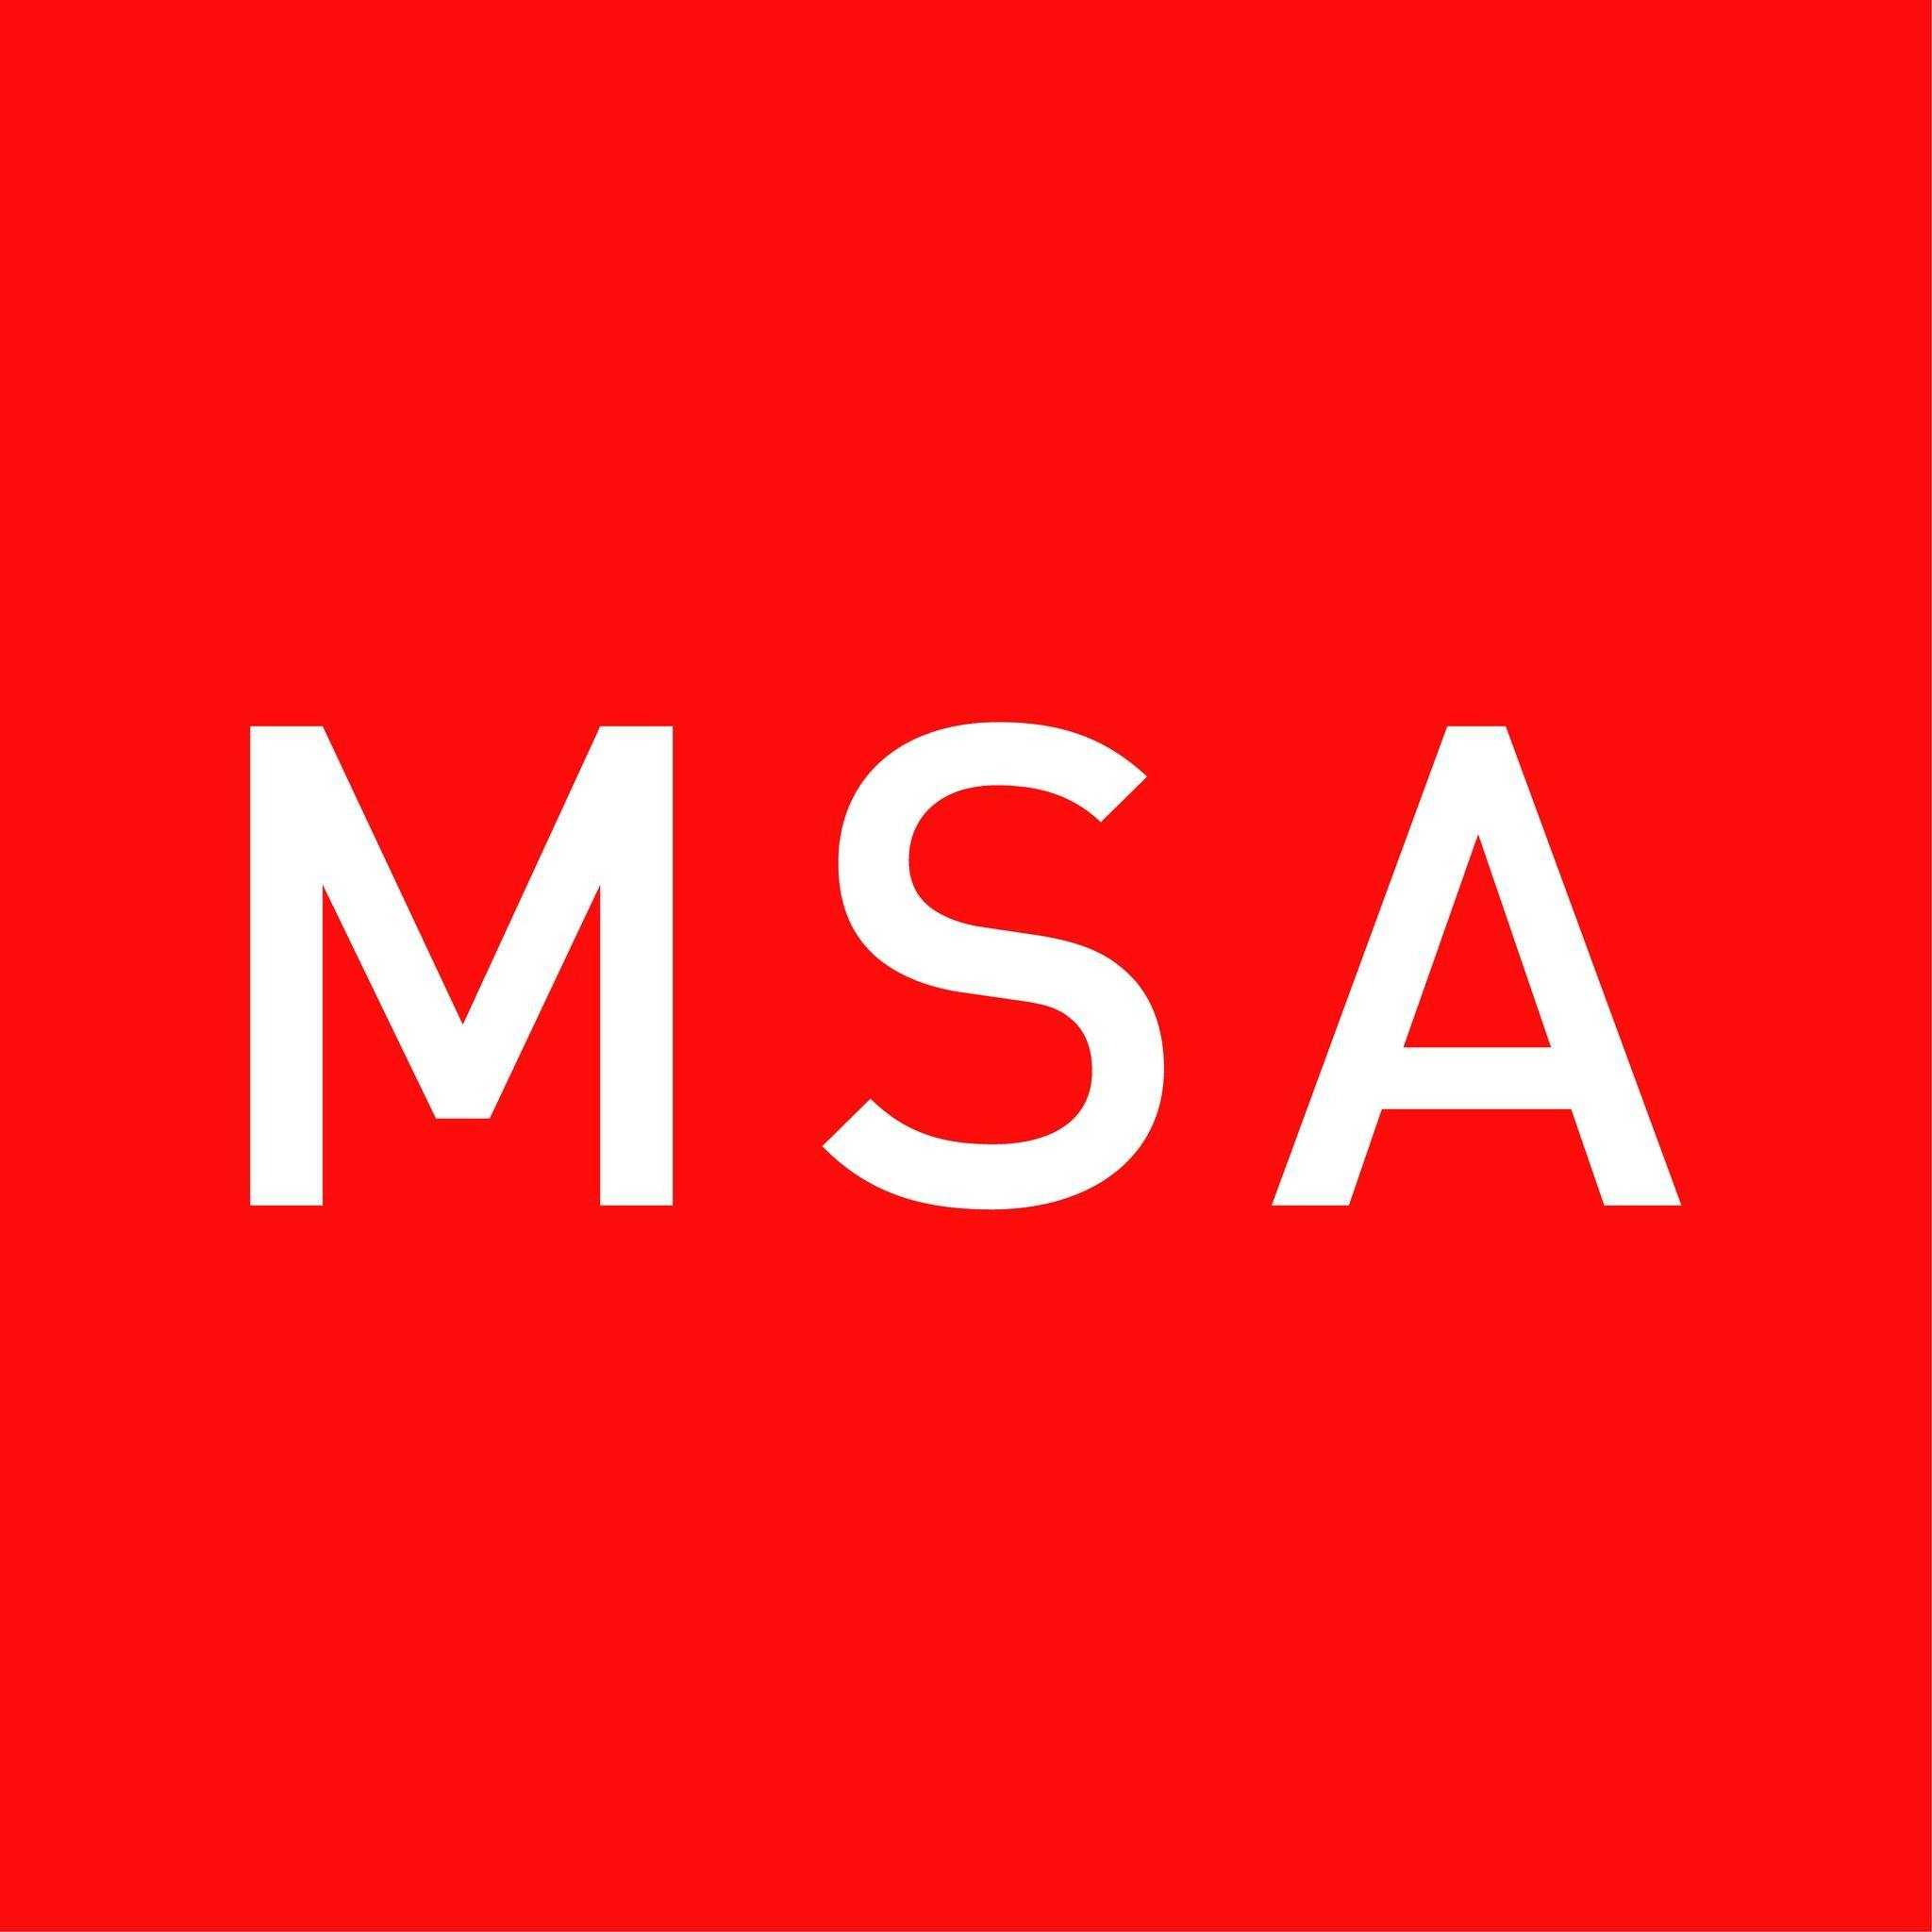 MSA letter logo design with black background in illustrator, vector logo  modern alphabet font overlap style. calligraphy designs for logo, Poster,  Invitation, etc. Stock Vector | Adobe Stock